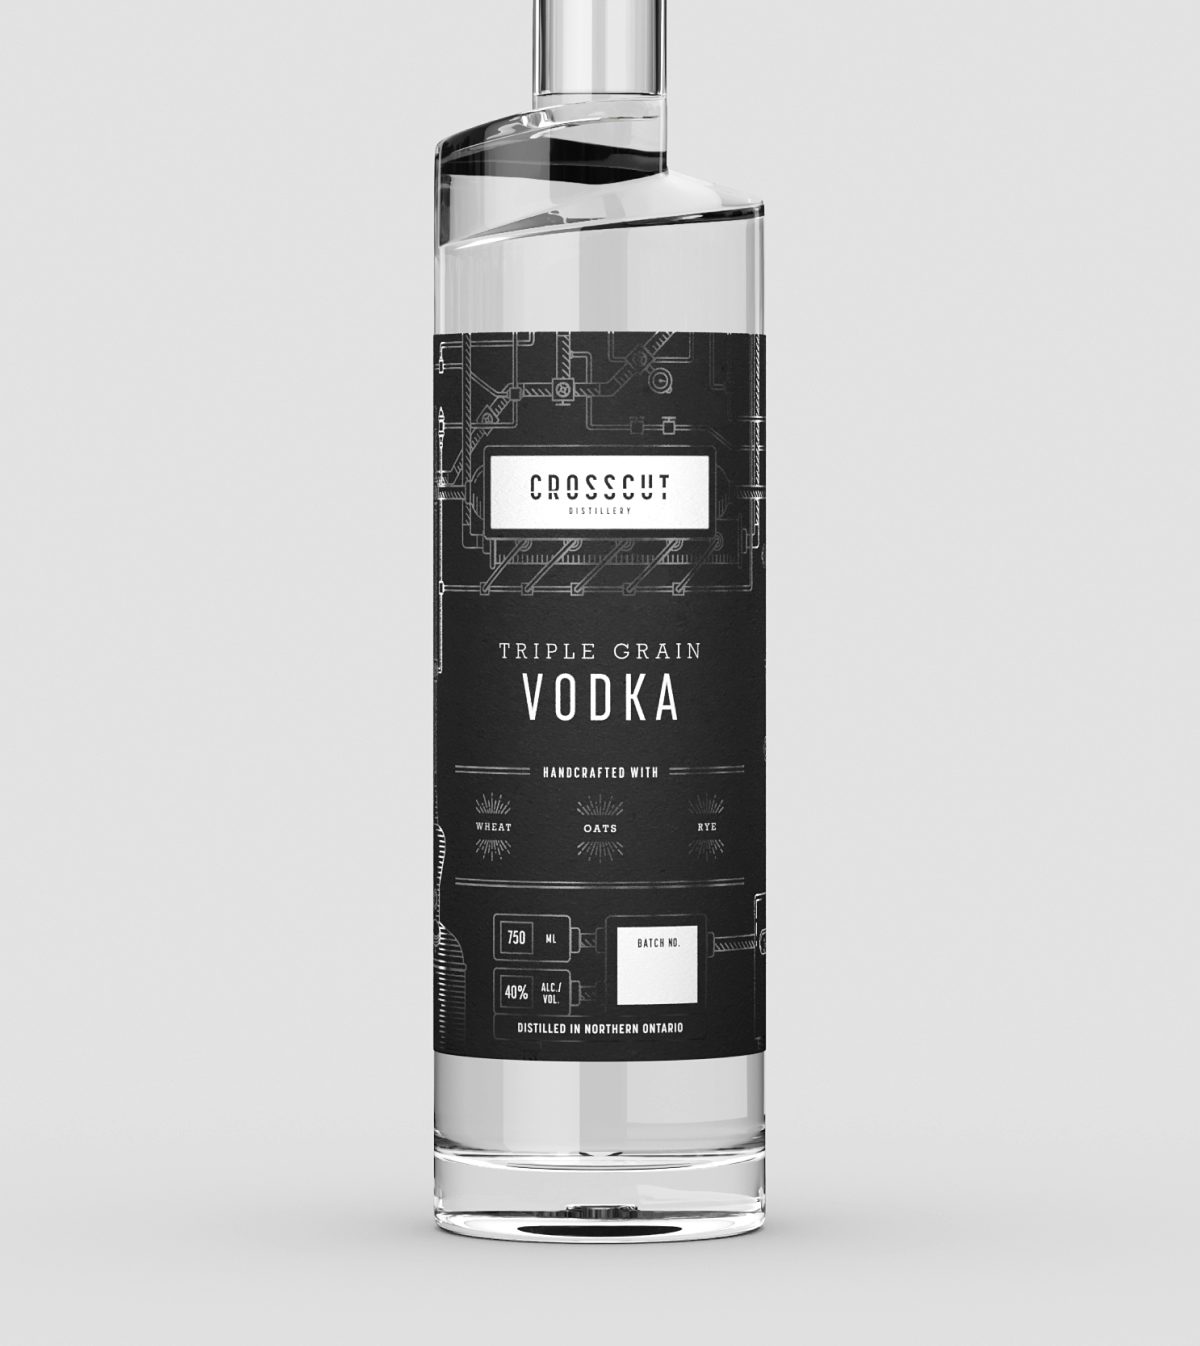 3D model of Crosscut Distillery's Triple Grain Vodka bottle with dark labels affixed